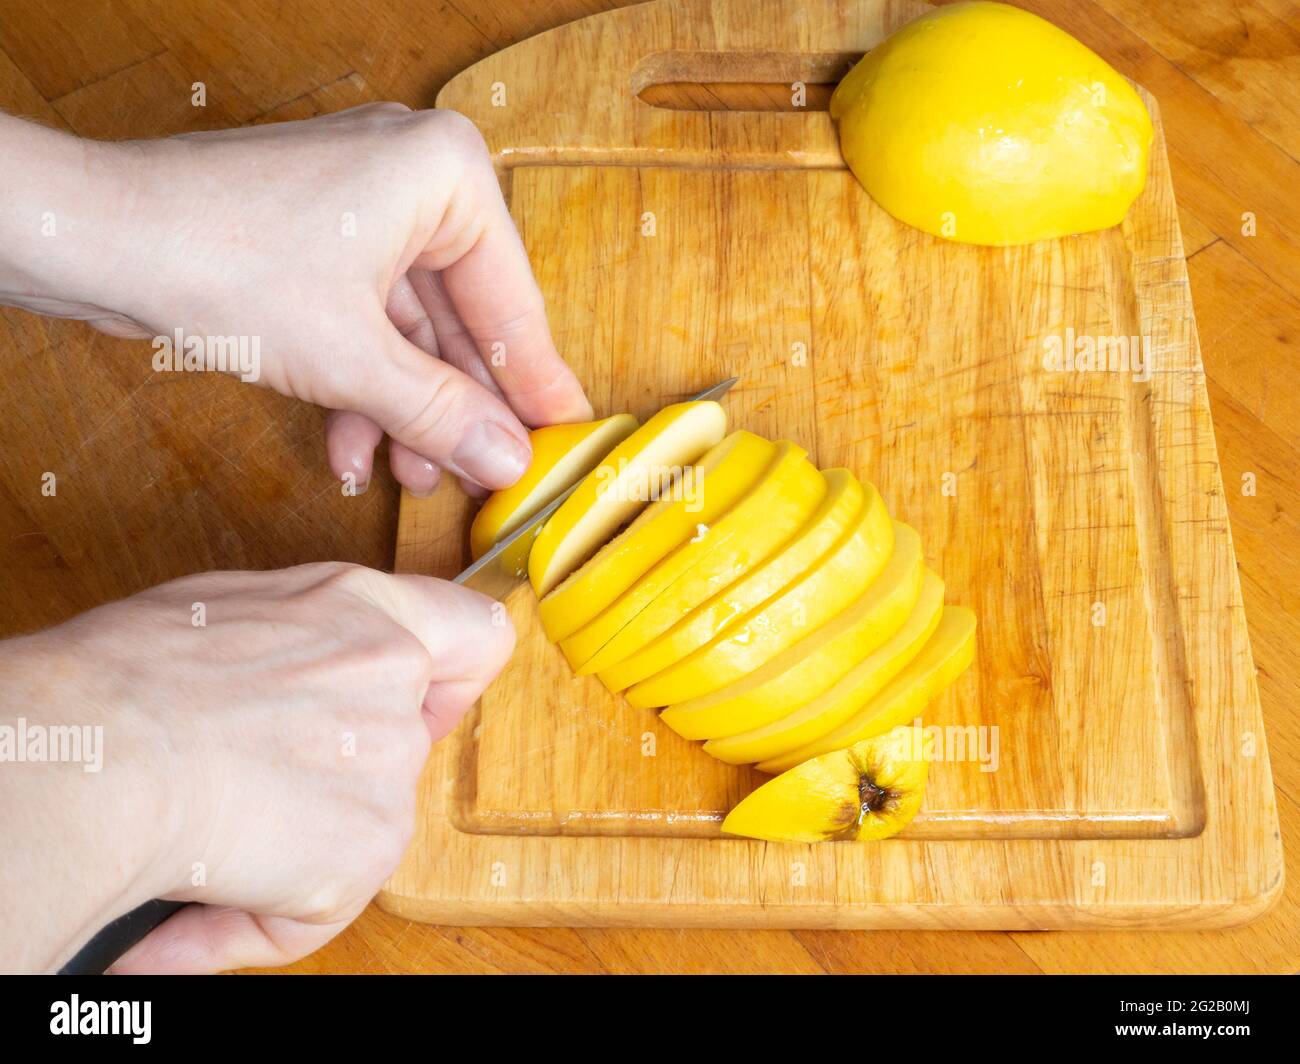 Mani tagliate con un coltello affilato giallo IVA in pezzi sottili su una tavola di legno da cucina. Foto Stock